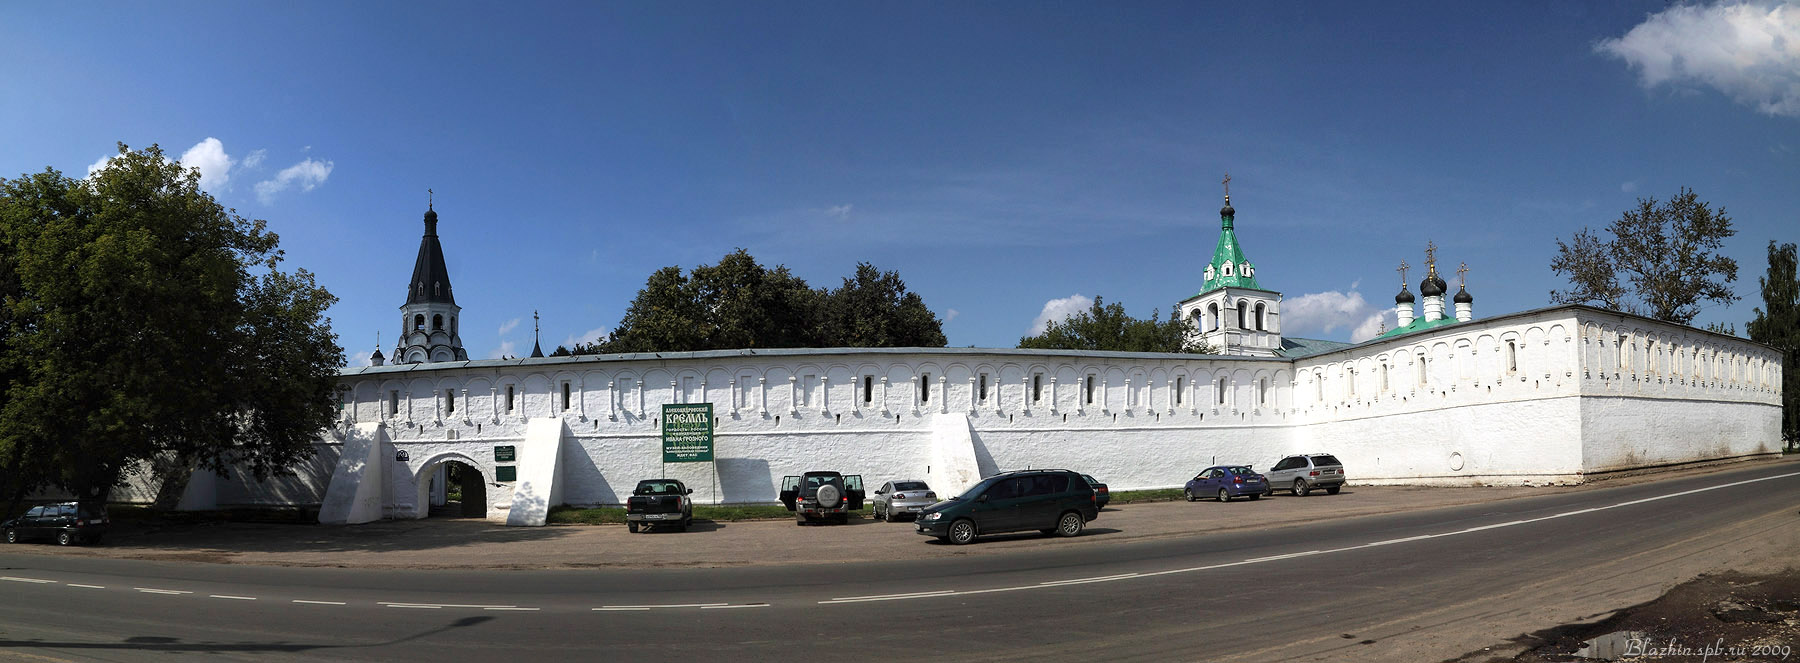 Александров,Свято-Успенский монастырь